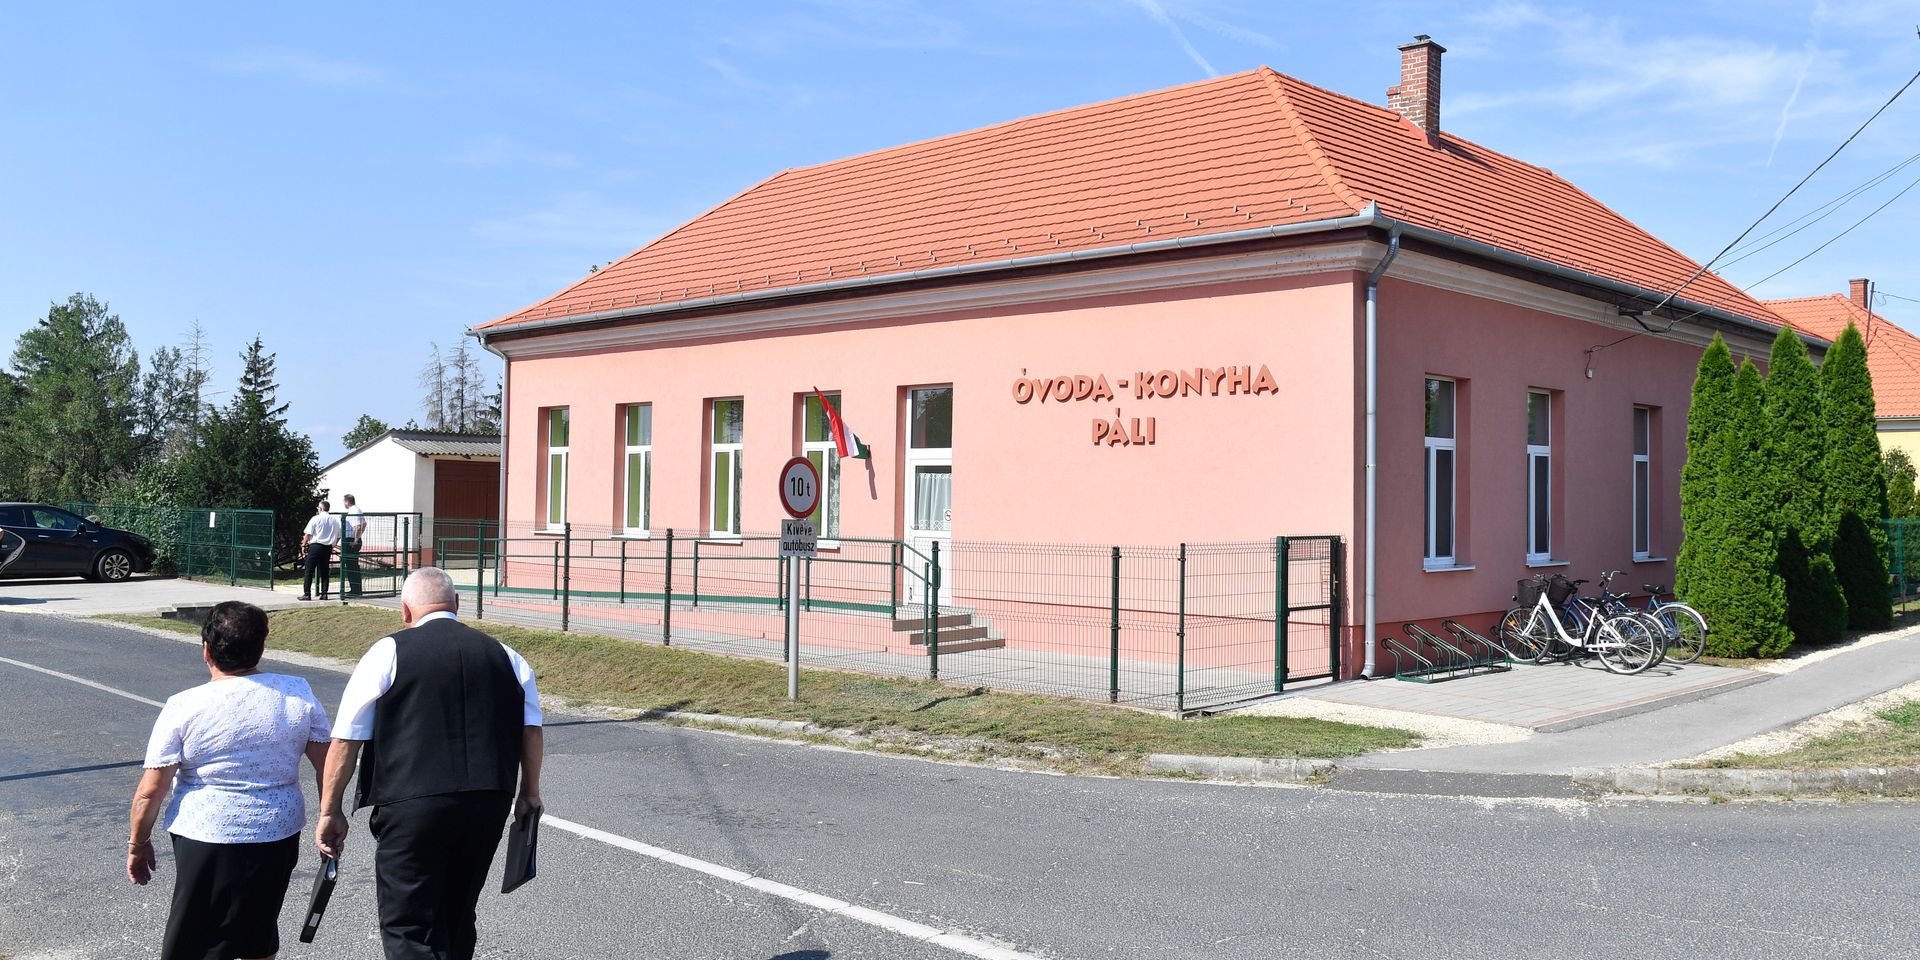 1400 óvodát újítanak fel a Magyar falu program részeként